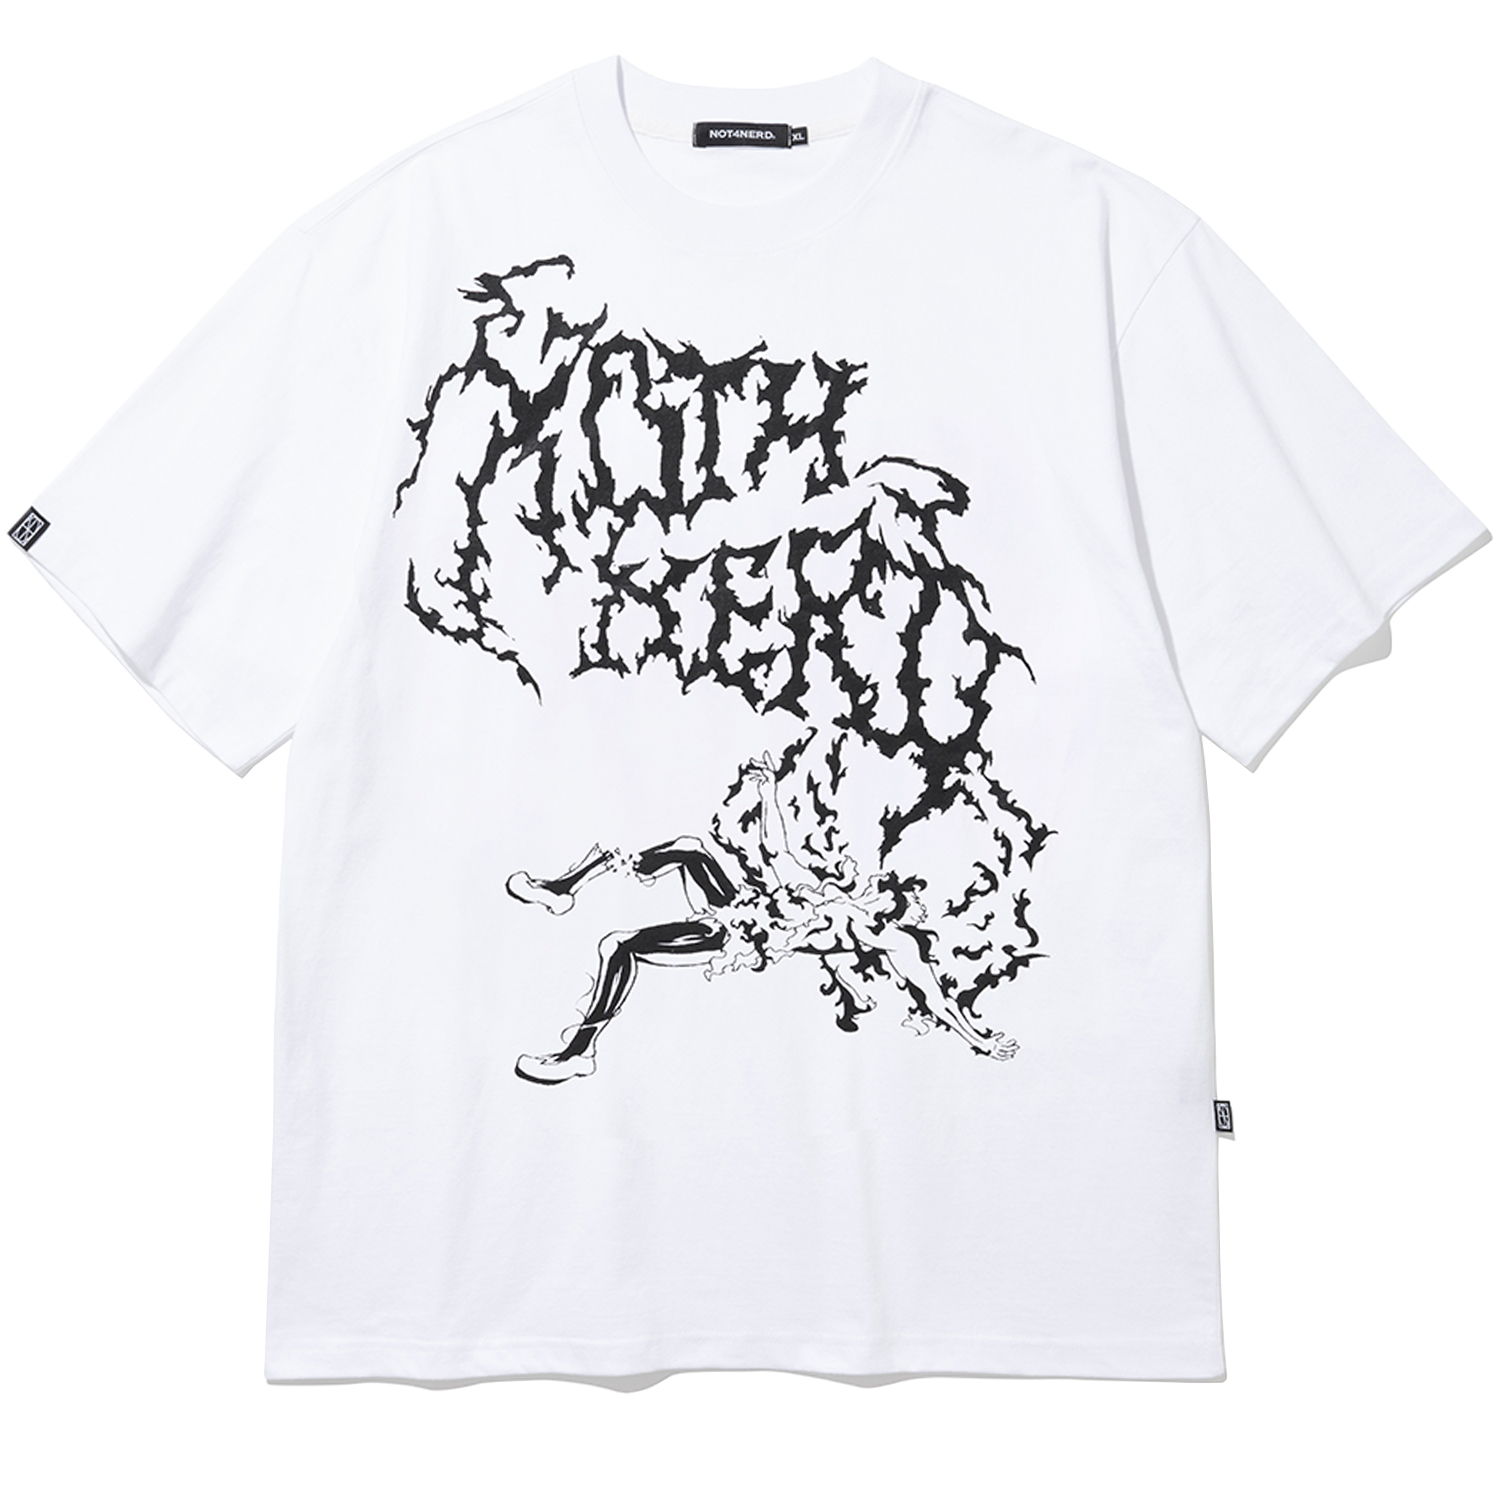 [4월 19일 예약배송] Scream T-Shirts - White,NOT4NERD